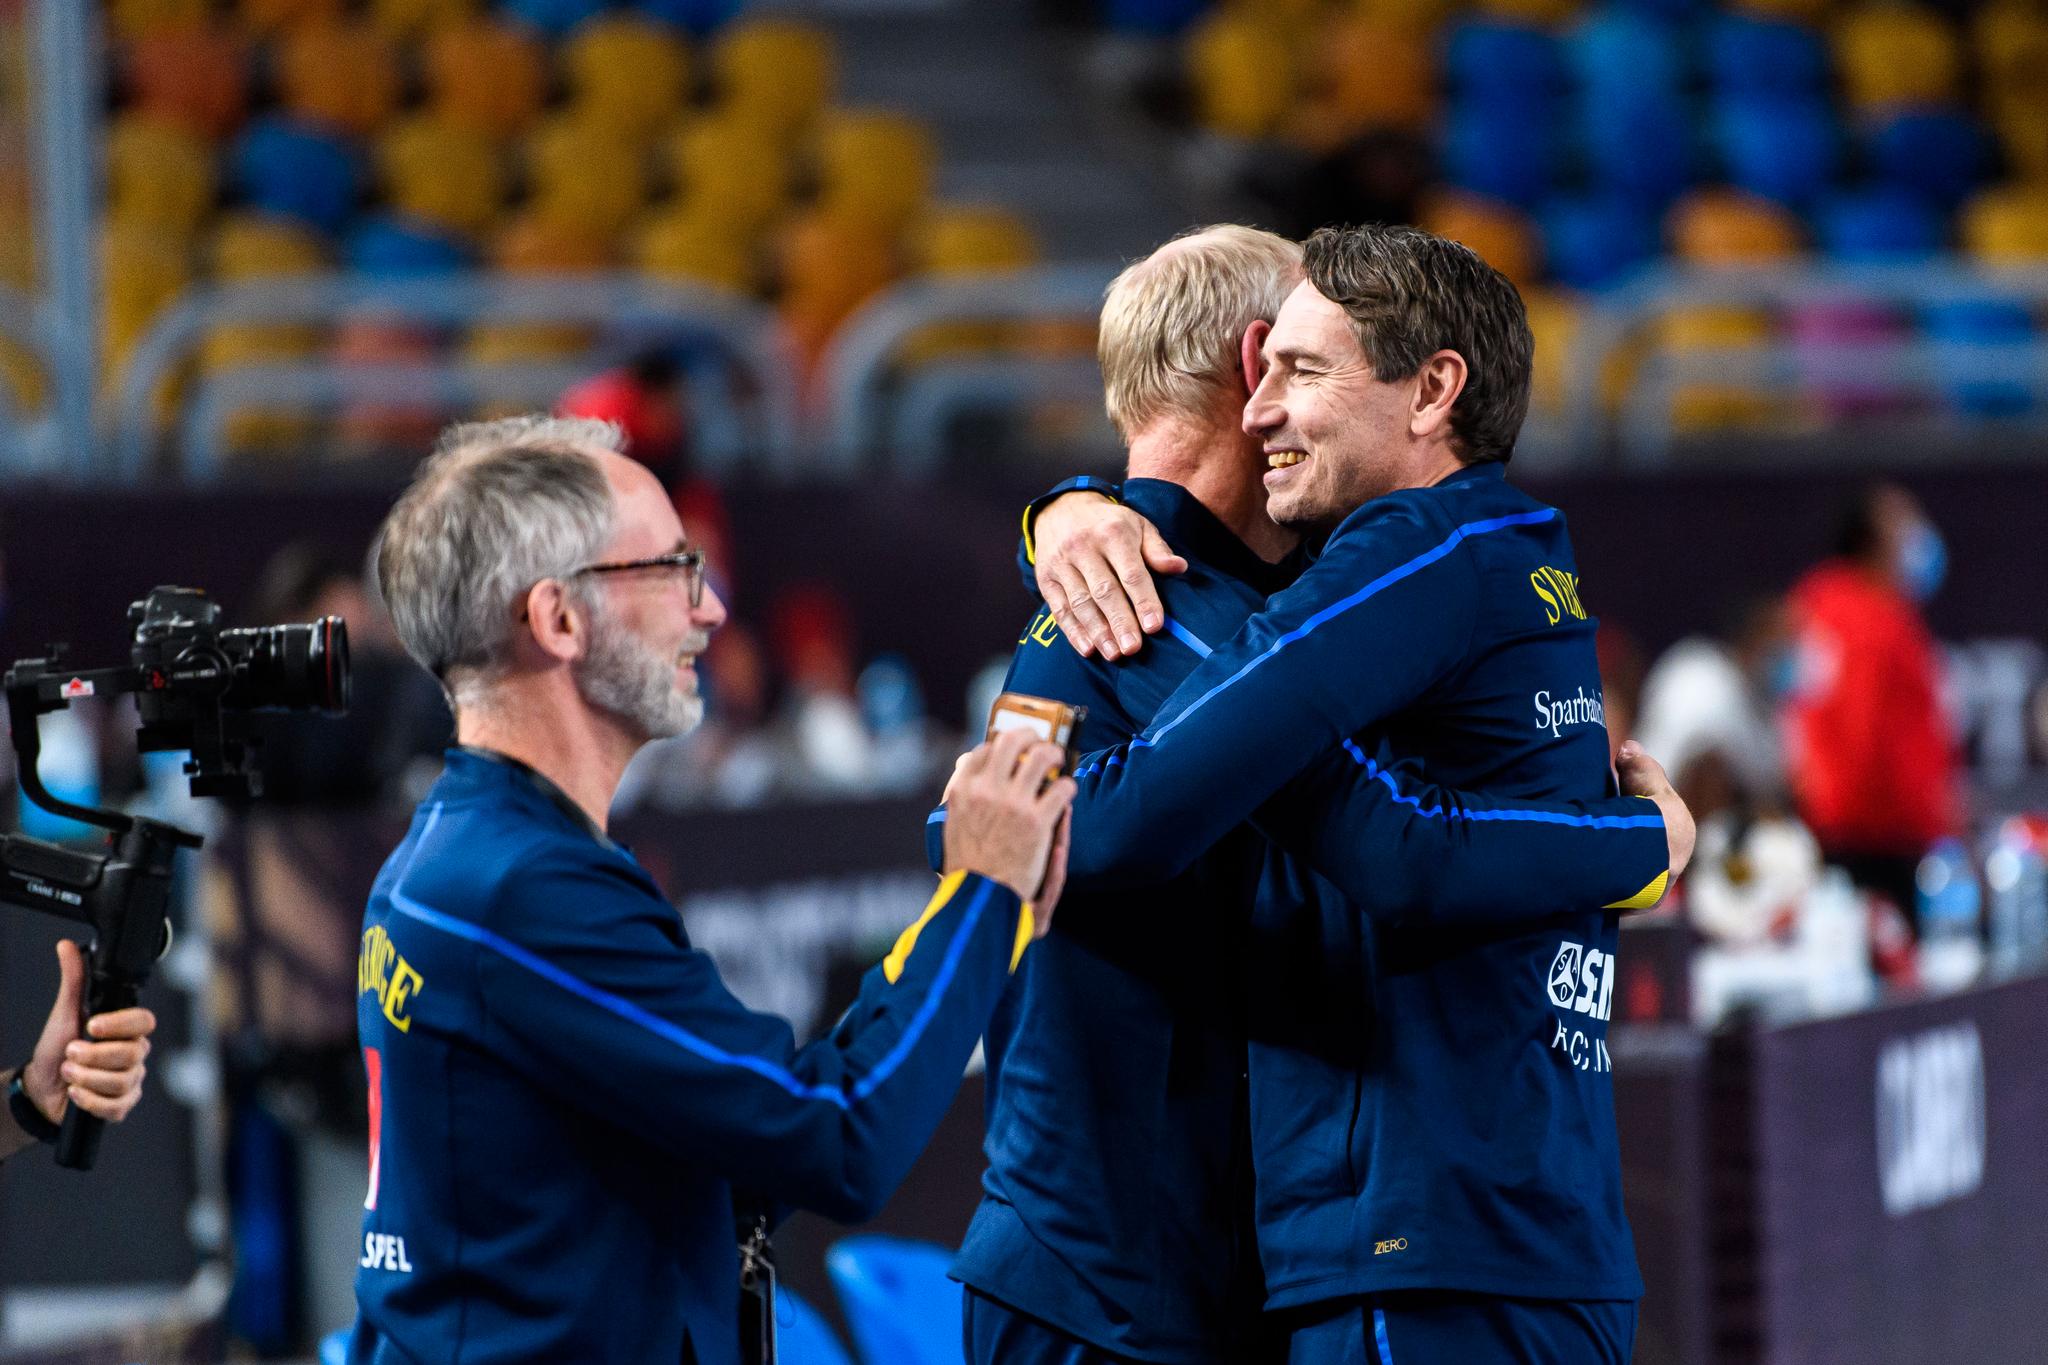 Omfavnelser er lov i denne kohorten. Trener Glenn Solberg (t.h.) omfavner målvaktstreer Mats Olsson,  som også er med det norske kvinnelandslaget. 